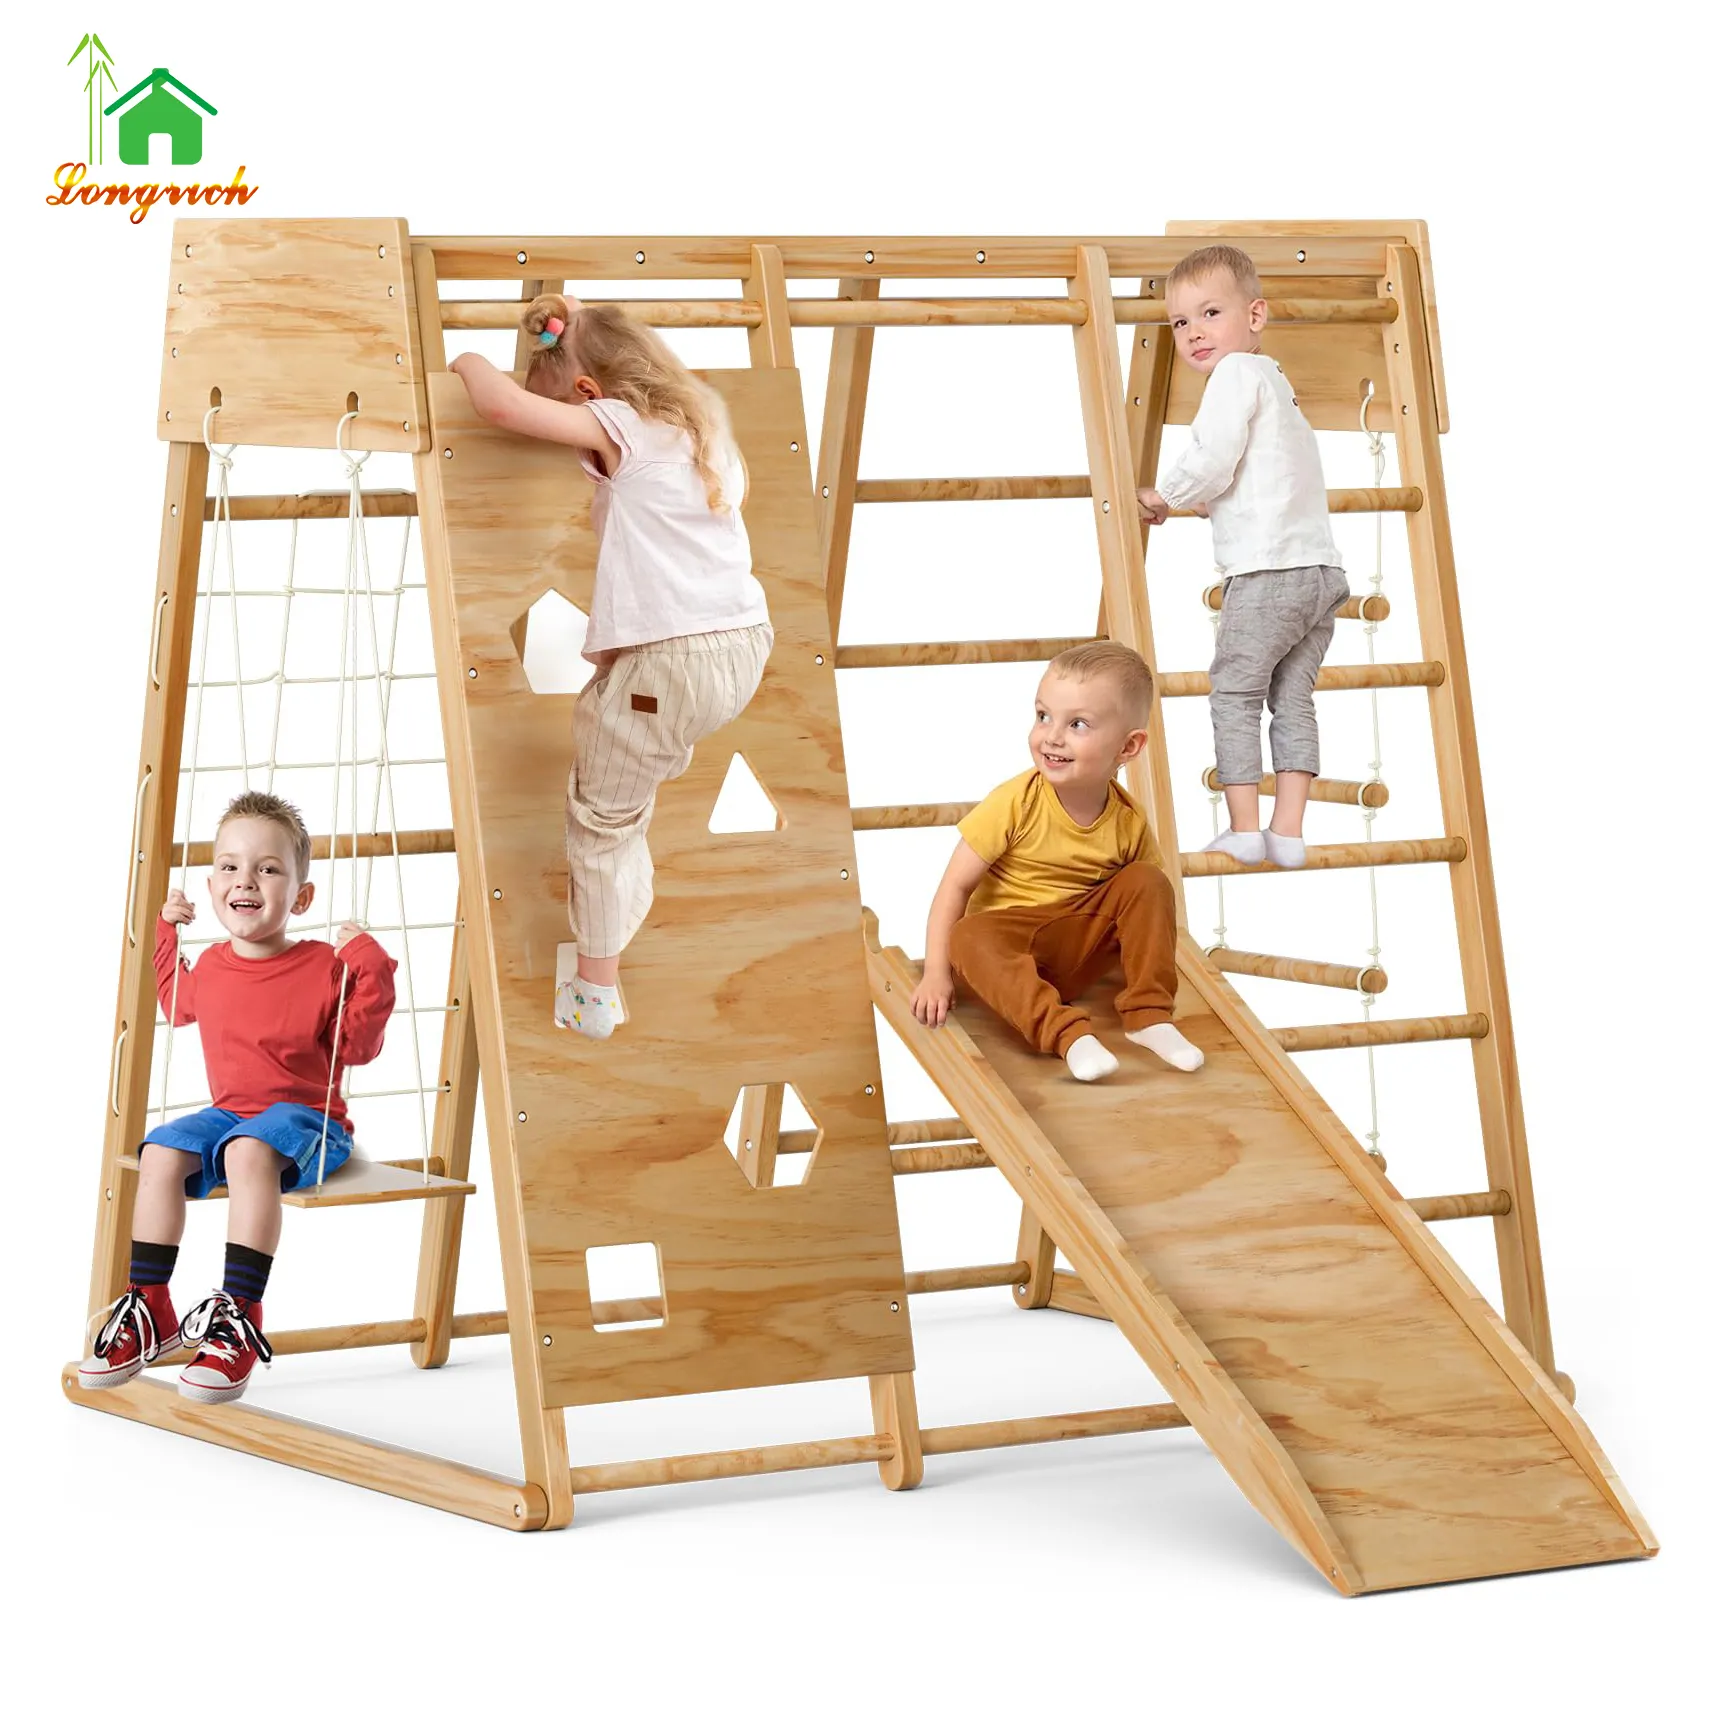 Escalade Rock Kids cadre de montée en bois 8-en-1 jouets d'escalade enfants avec toboggan pour les tout-petits